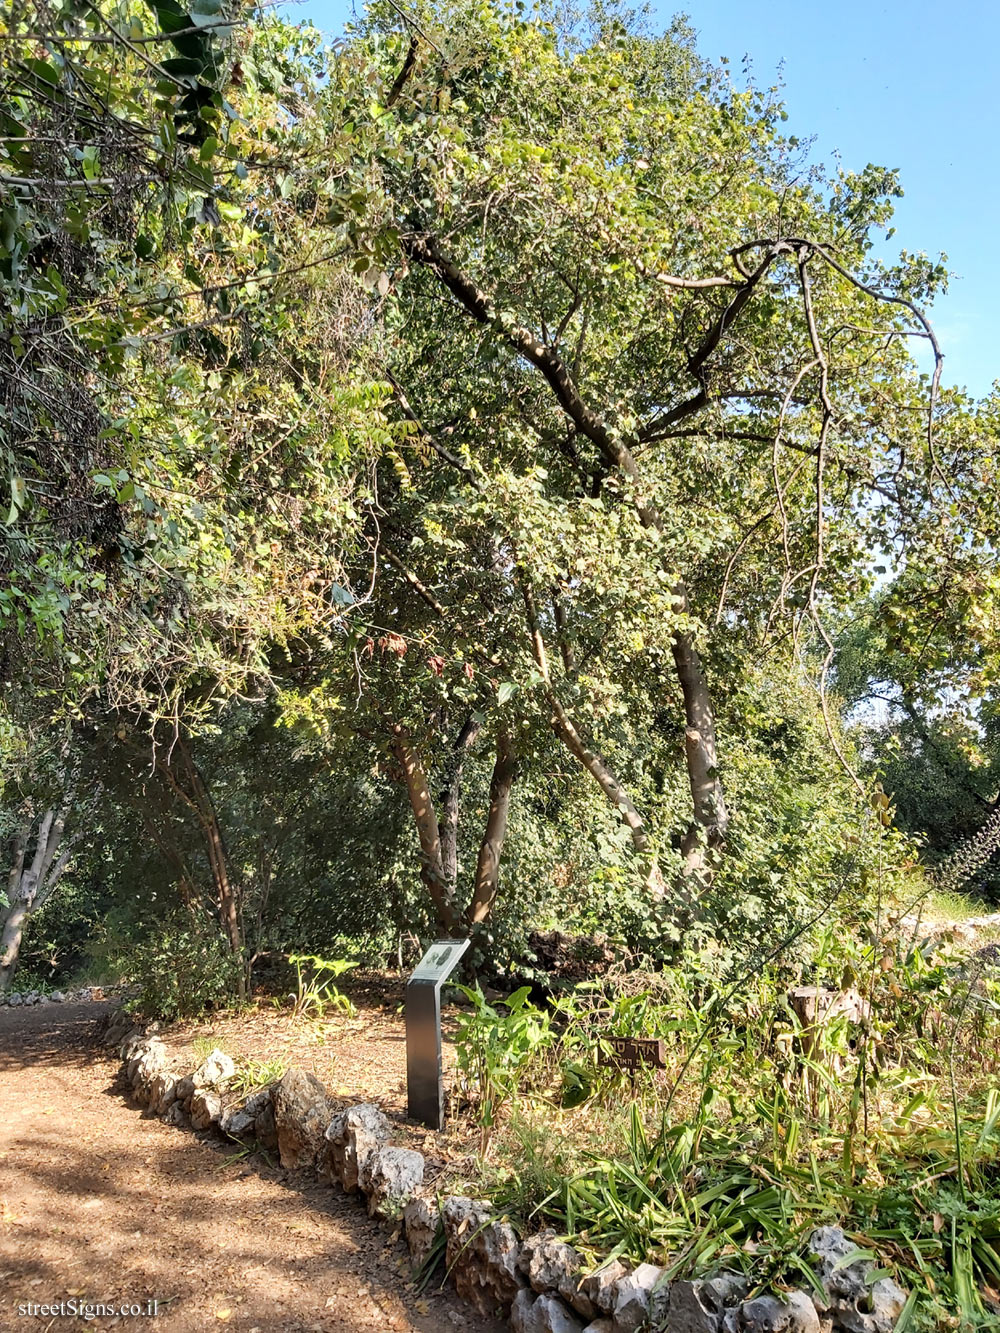 Tel Aviv - Ecological Botanical Garden - Syrian maple - Herzl St 157, Tel Aviv-Yafo, Israel